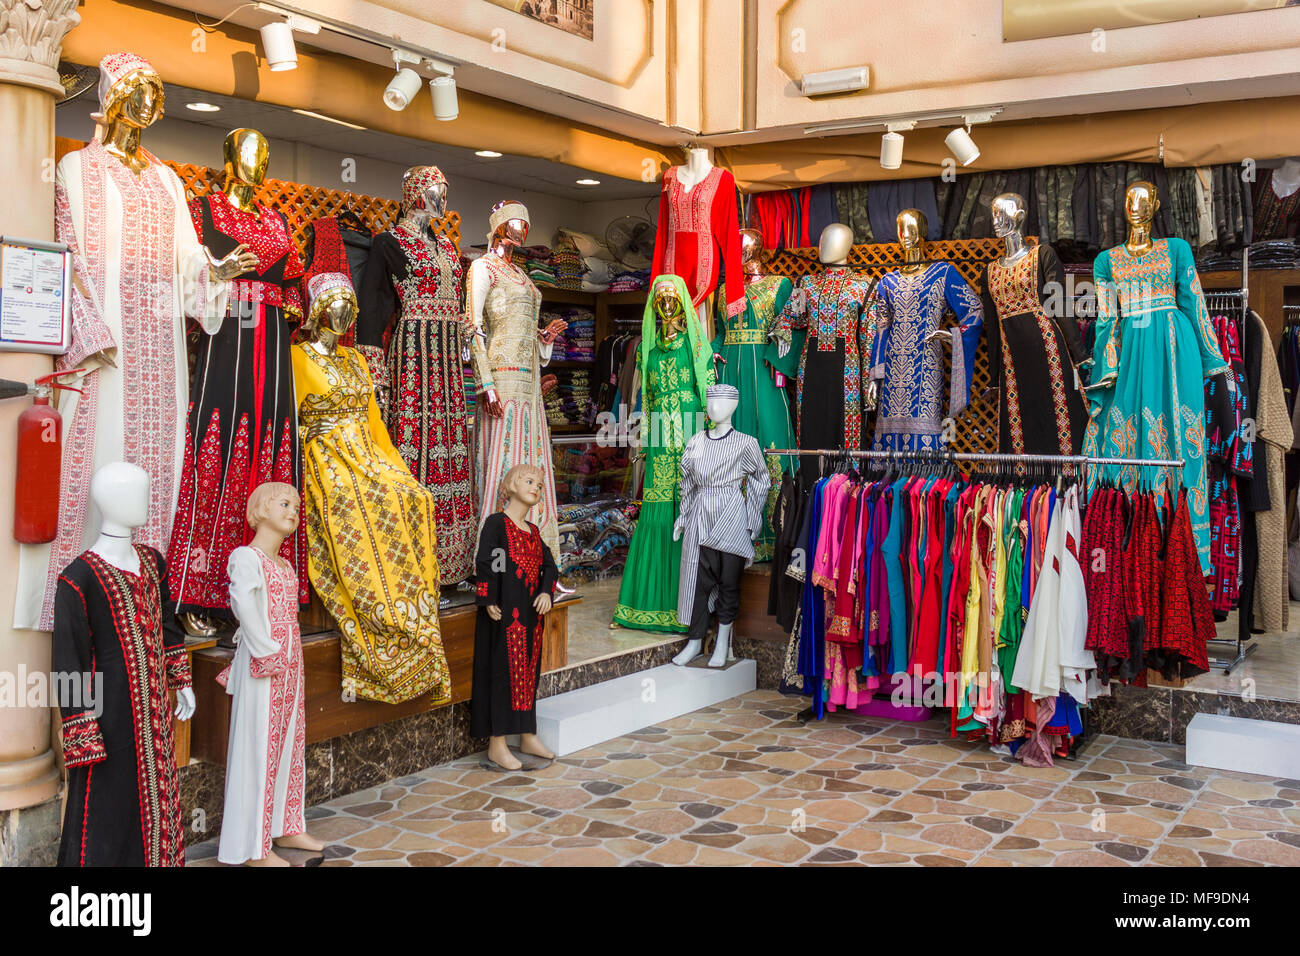 Tienda de ropa india dubai fotografías e imágenes de alta resolución - Alamy